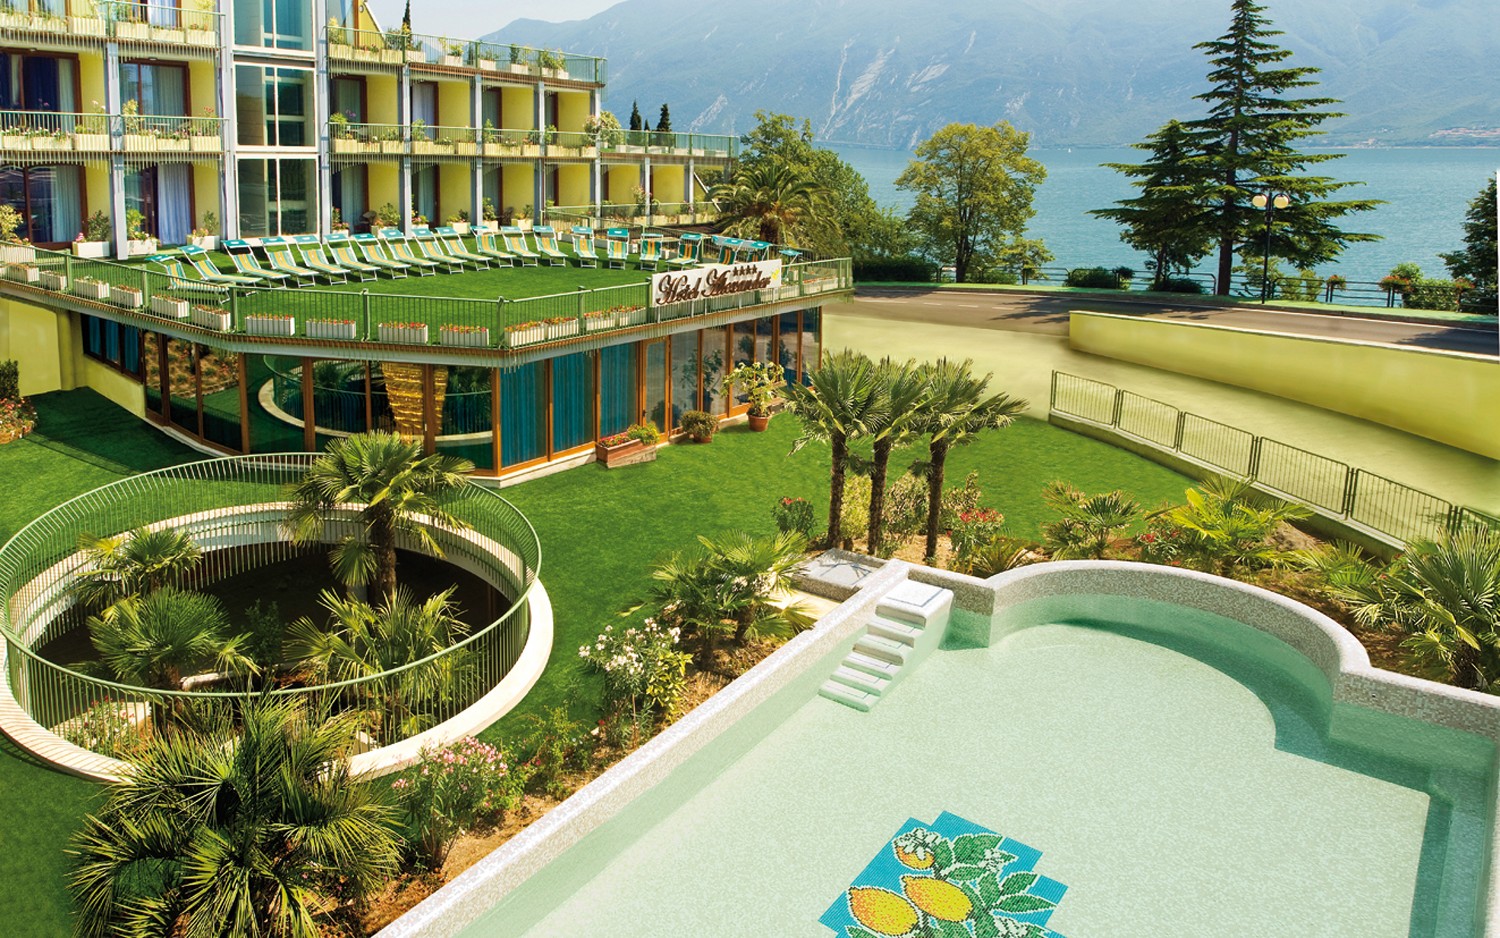 Hotel a Limone sul Garda, tutto giallo e con una bella piscina affrescata circondata da un prato verde.